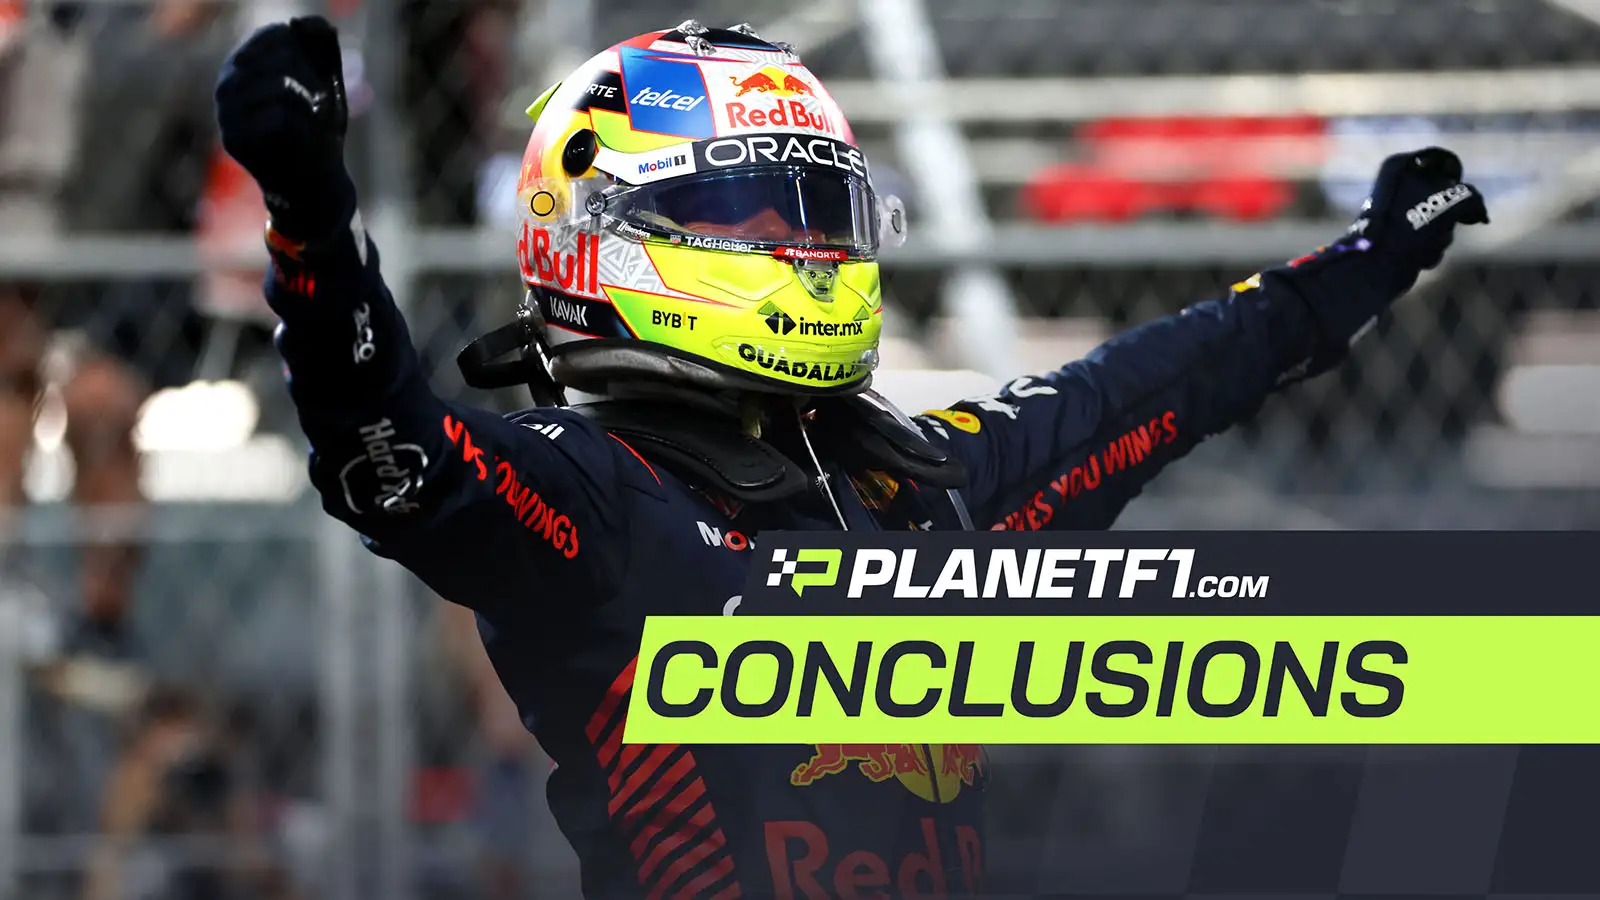 Saudi Arabia Grand Prix conclusions by PlanetF1. March 2023